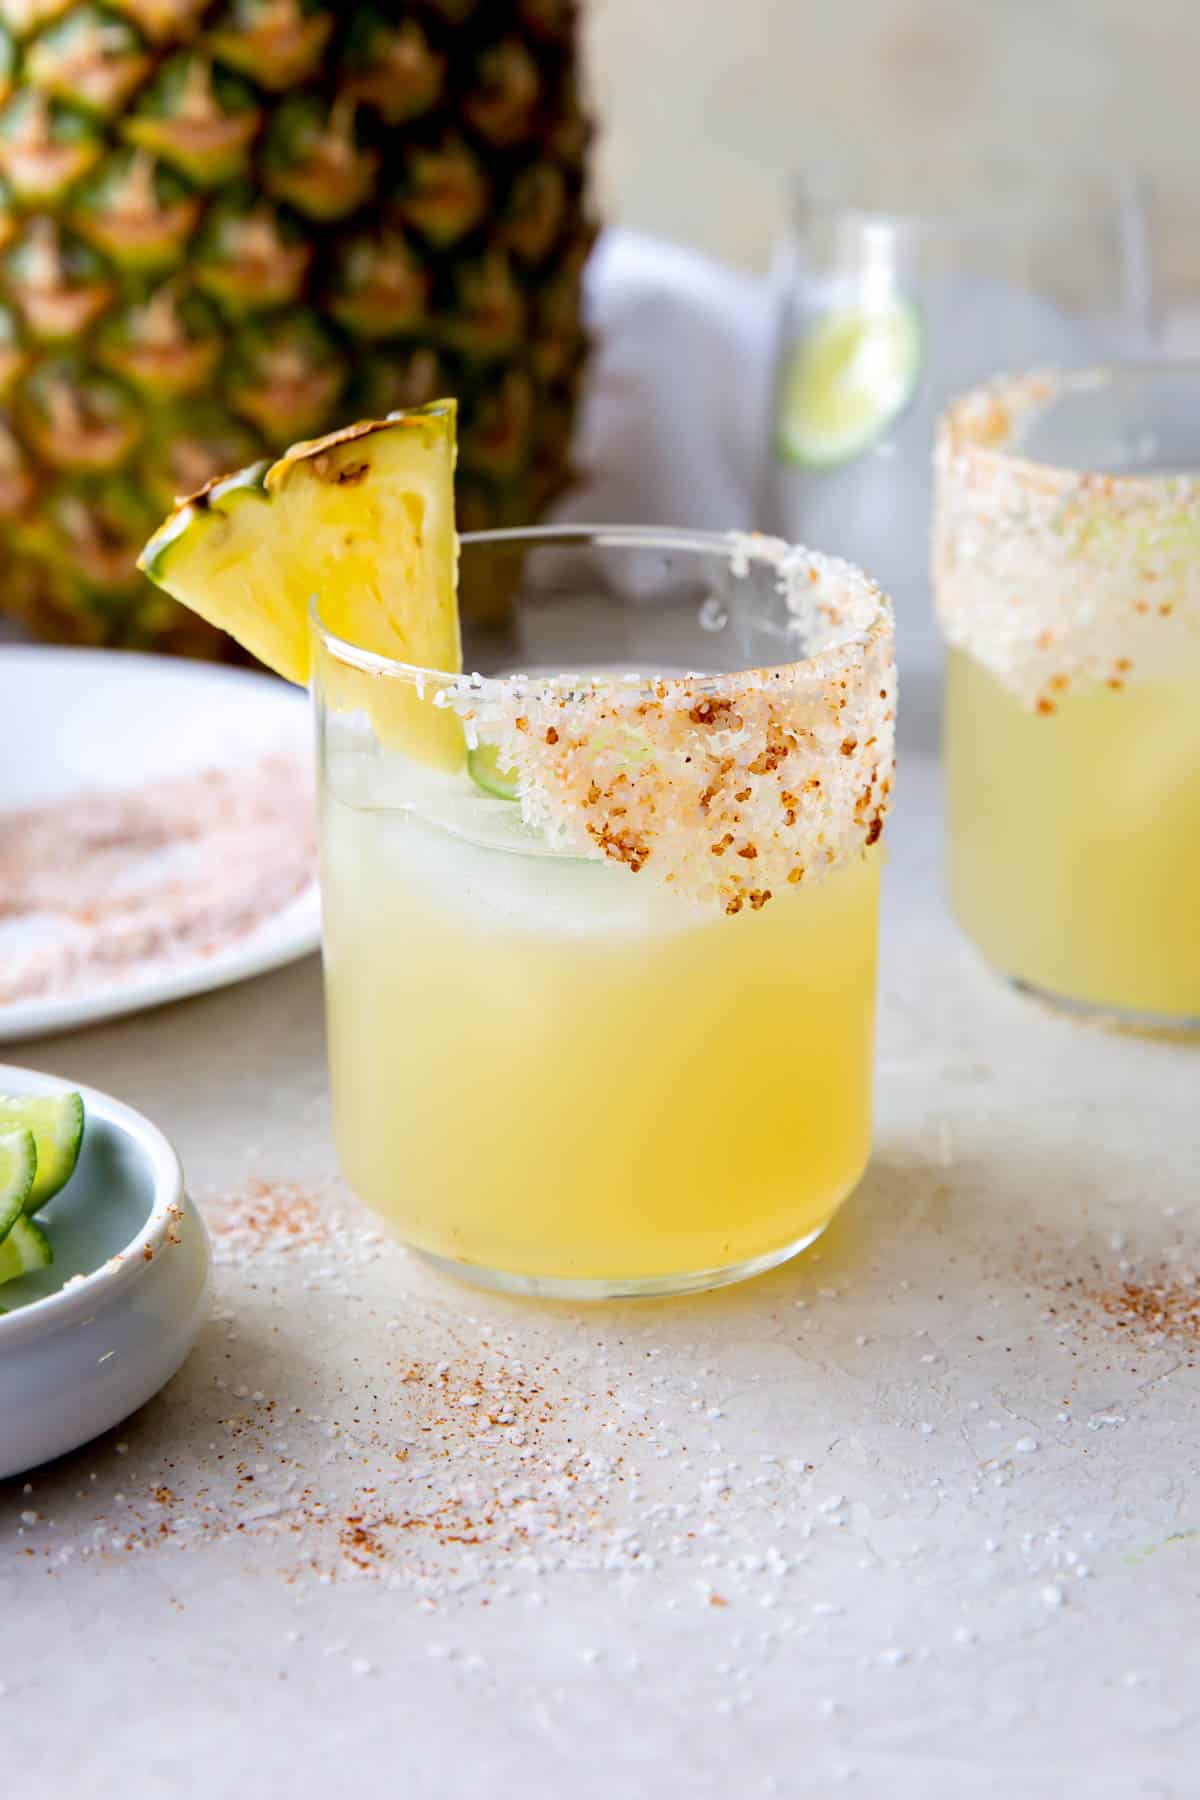 margarita au mezcal dans un verre avec un bord salé et une tranche d'ananas